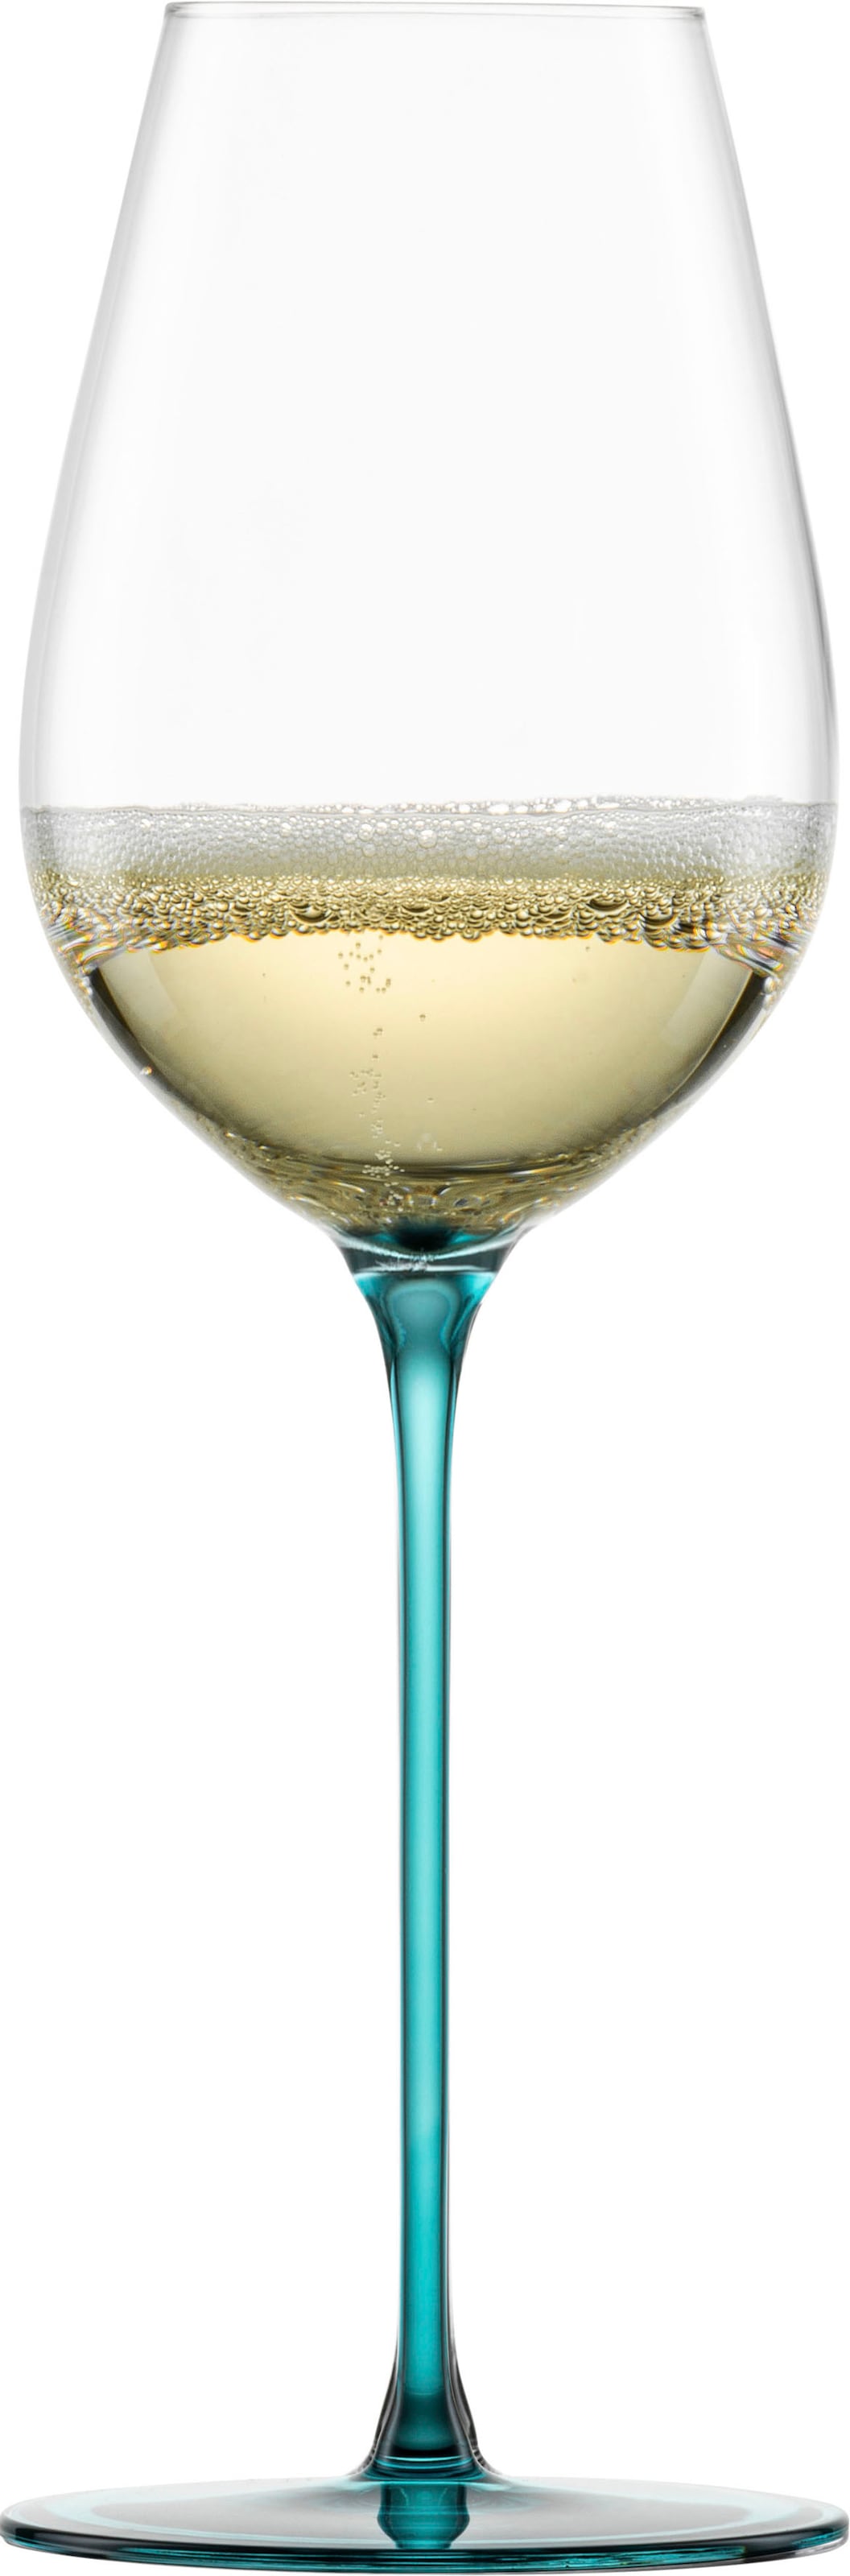 Eisch Champagnerglas "INSPIRE SENSISPLUS", (Set, 2 tlg., 2 Gläser im Geschenkkarton), die Veredelung der Stiele erfolgt 